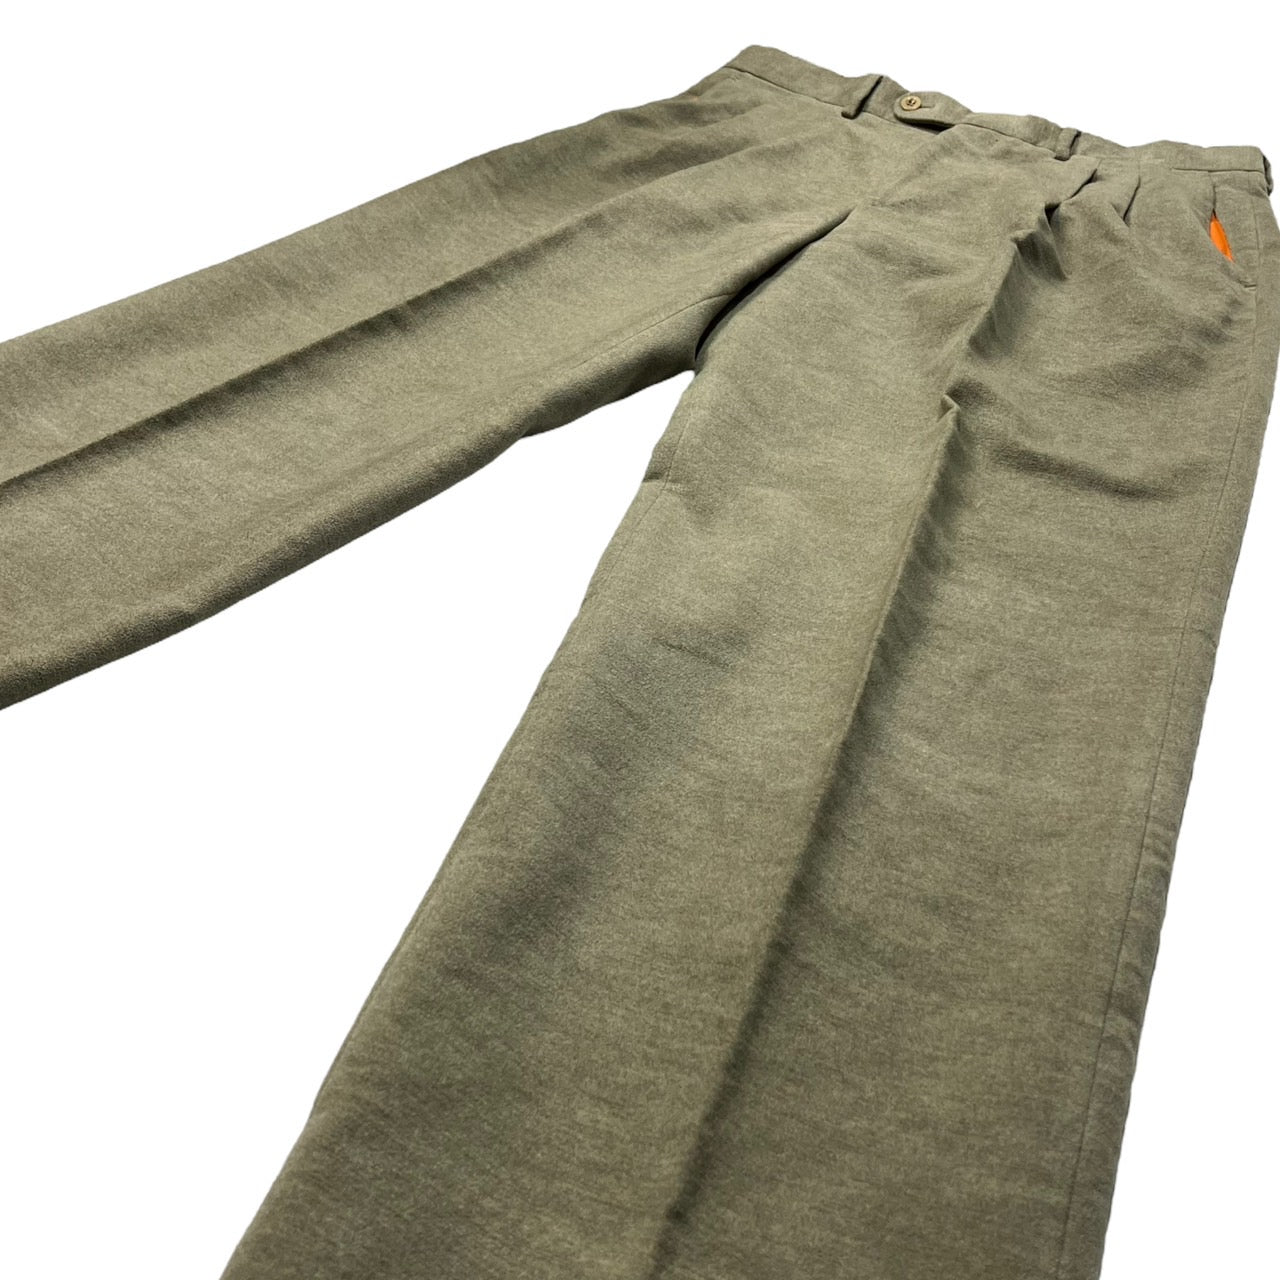 HERMES(エルメス) suede touch trousers/スウェードタッチトラウザー/パンツ/スラックス 52(XLサイズ程度)  ベージュ×オレンジ エルメスジャポンタグ